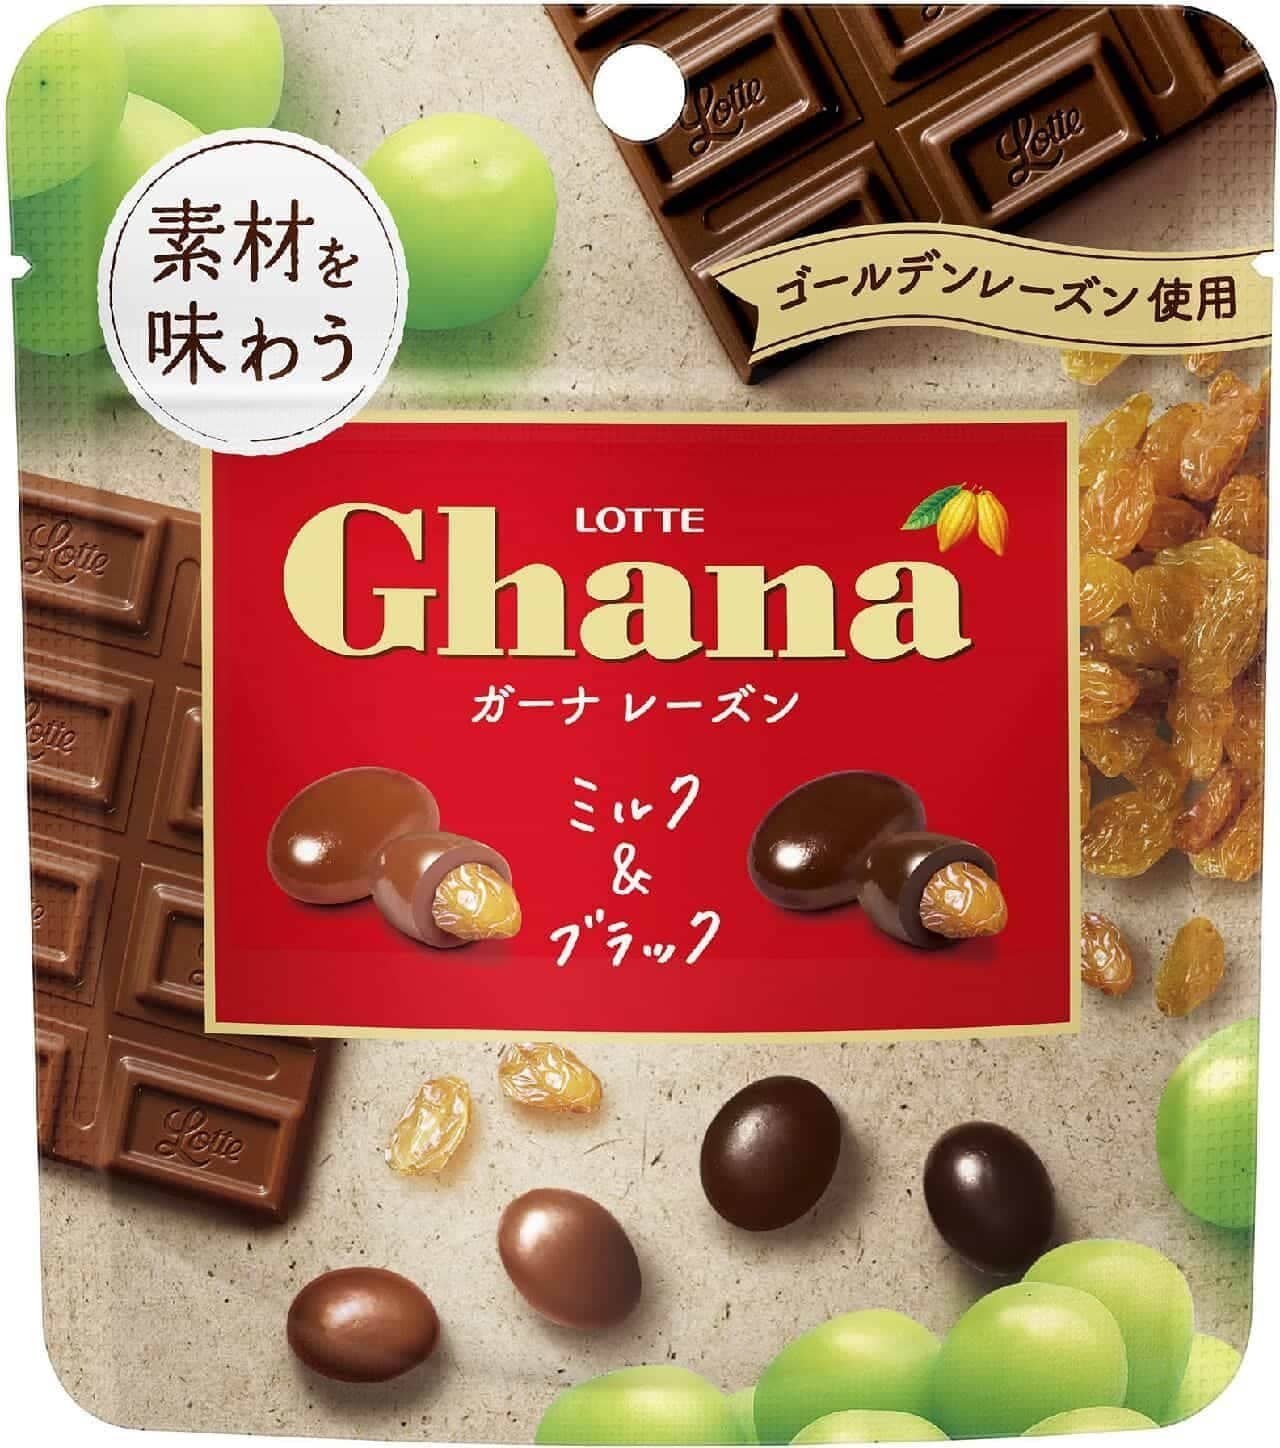 Lotte "Ghana raisins to taste the ingredients [milk & black]"